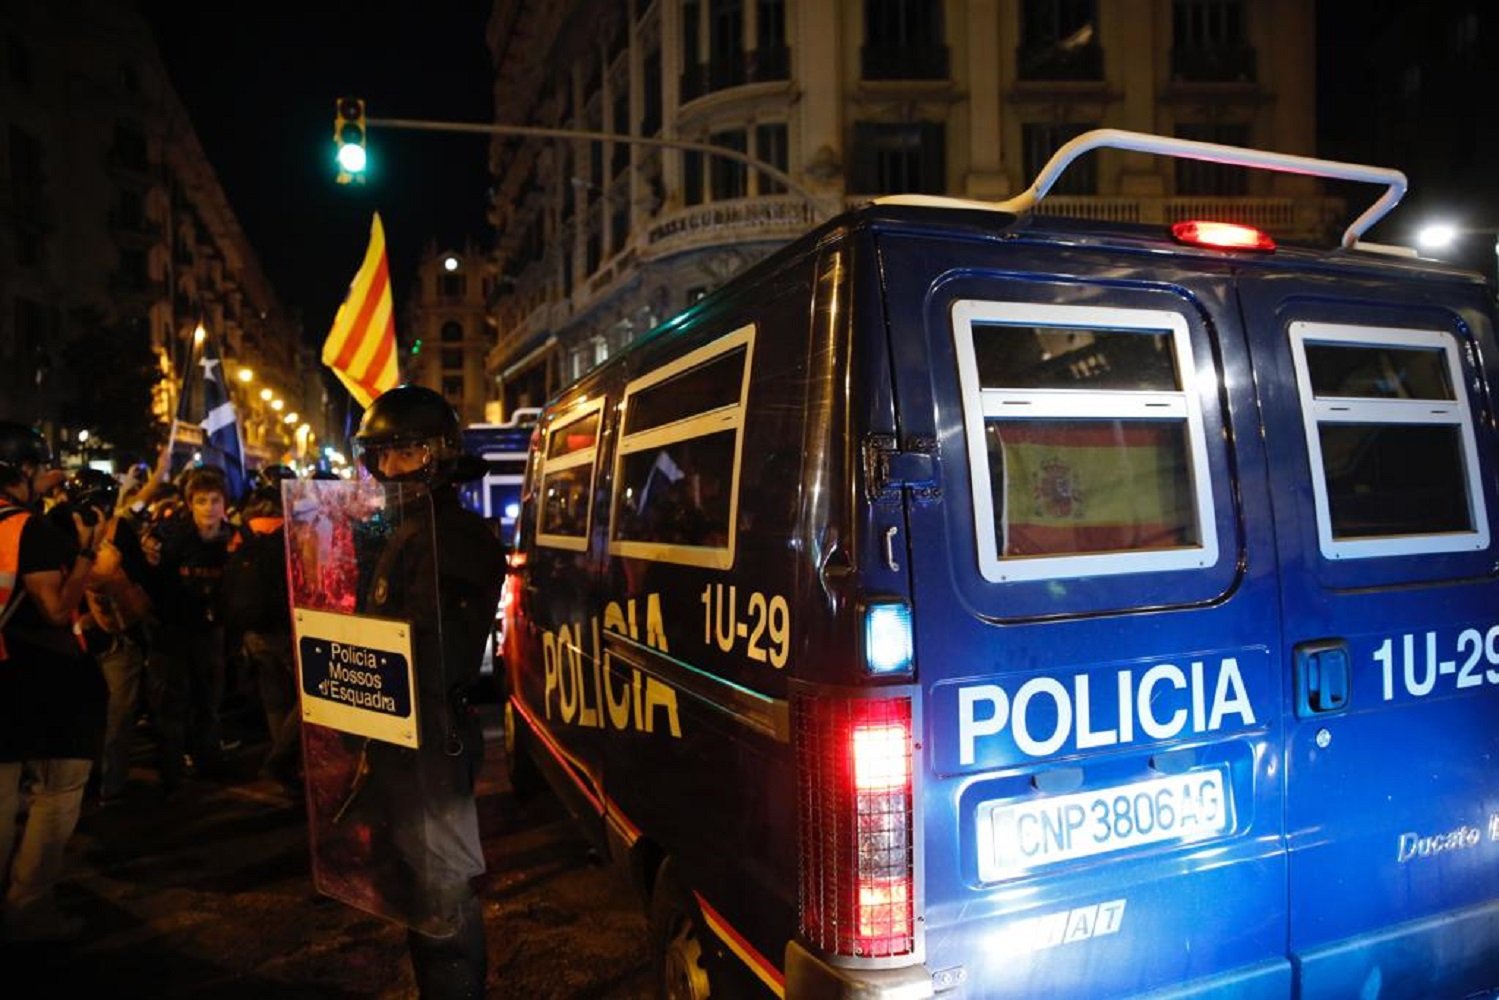 Estrés, la queja de los policías españoles destinados a Catalunya